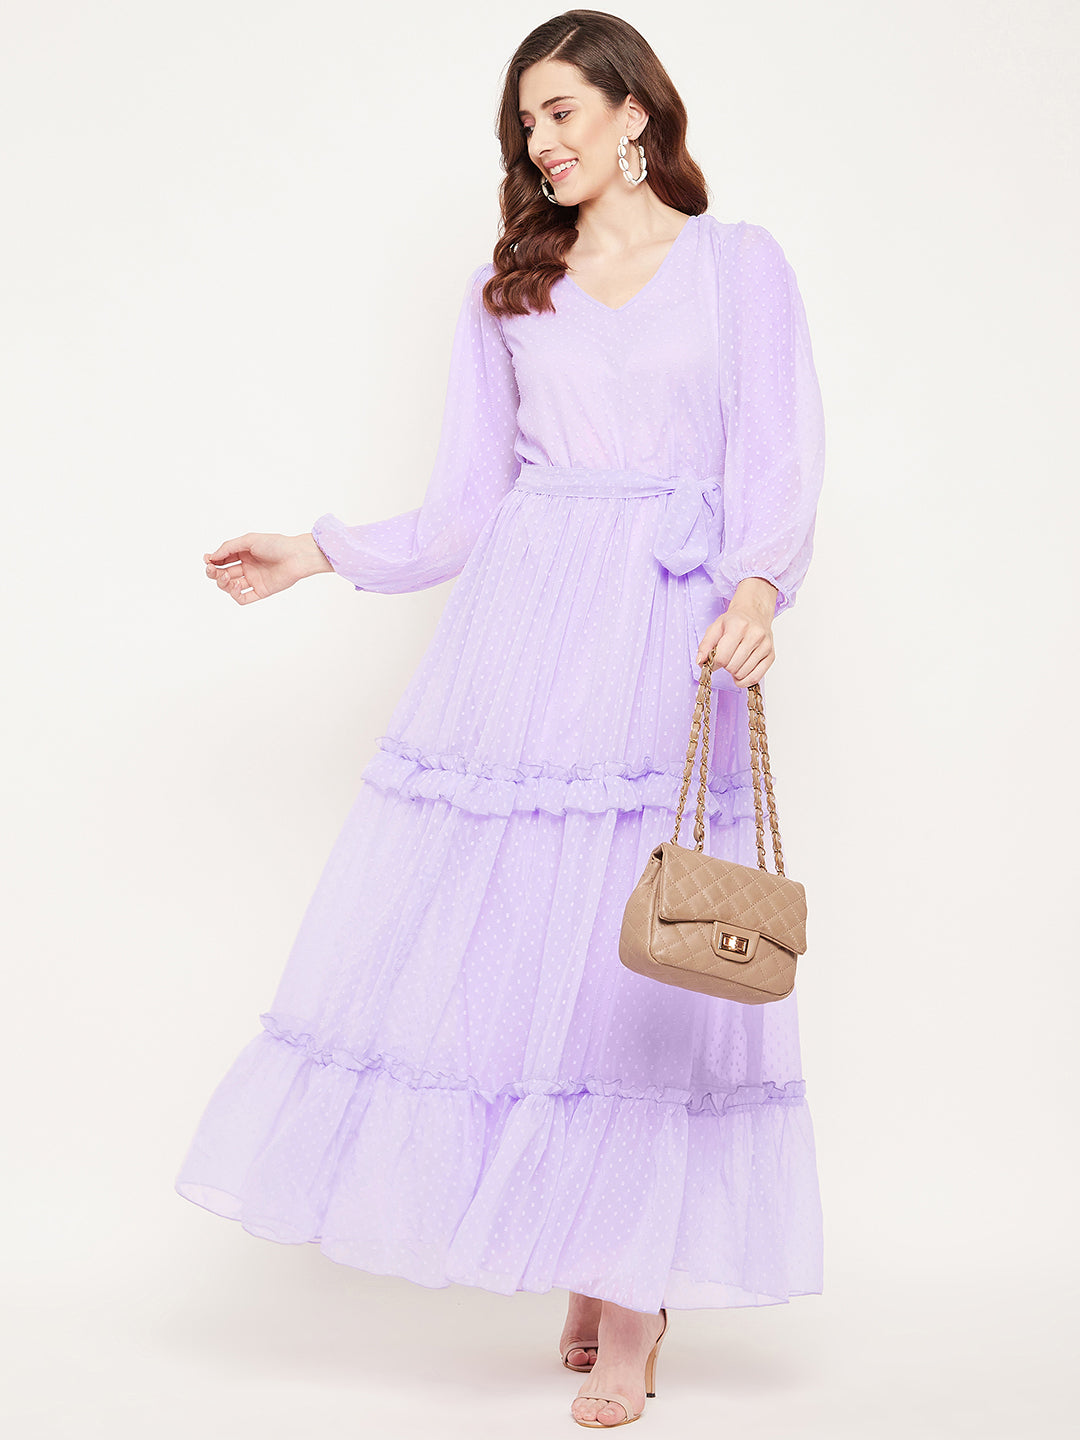 Sequin Dresses for Women - Buy Sequin Dresses for Ladies Online in India